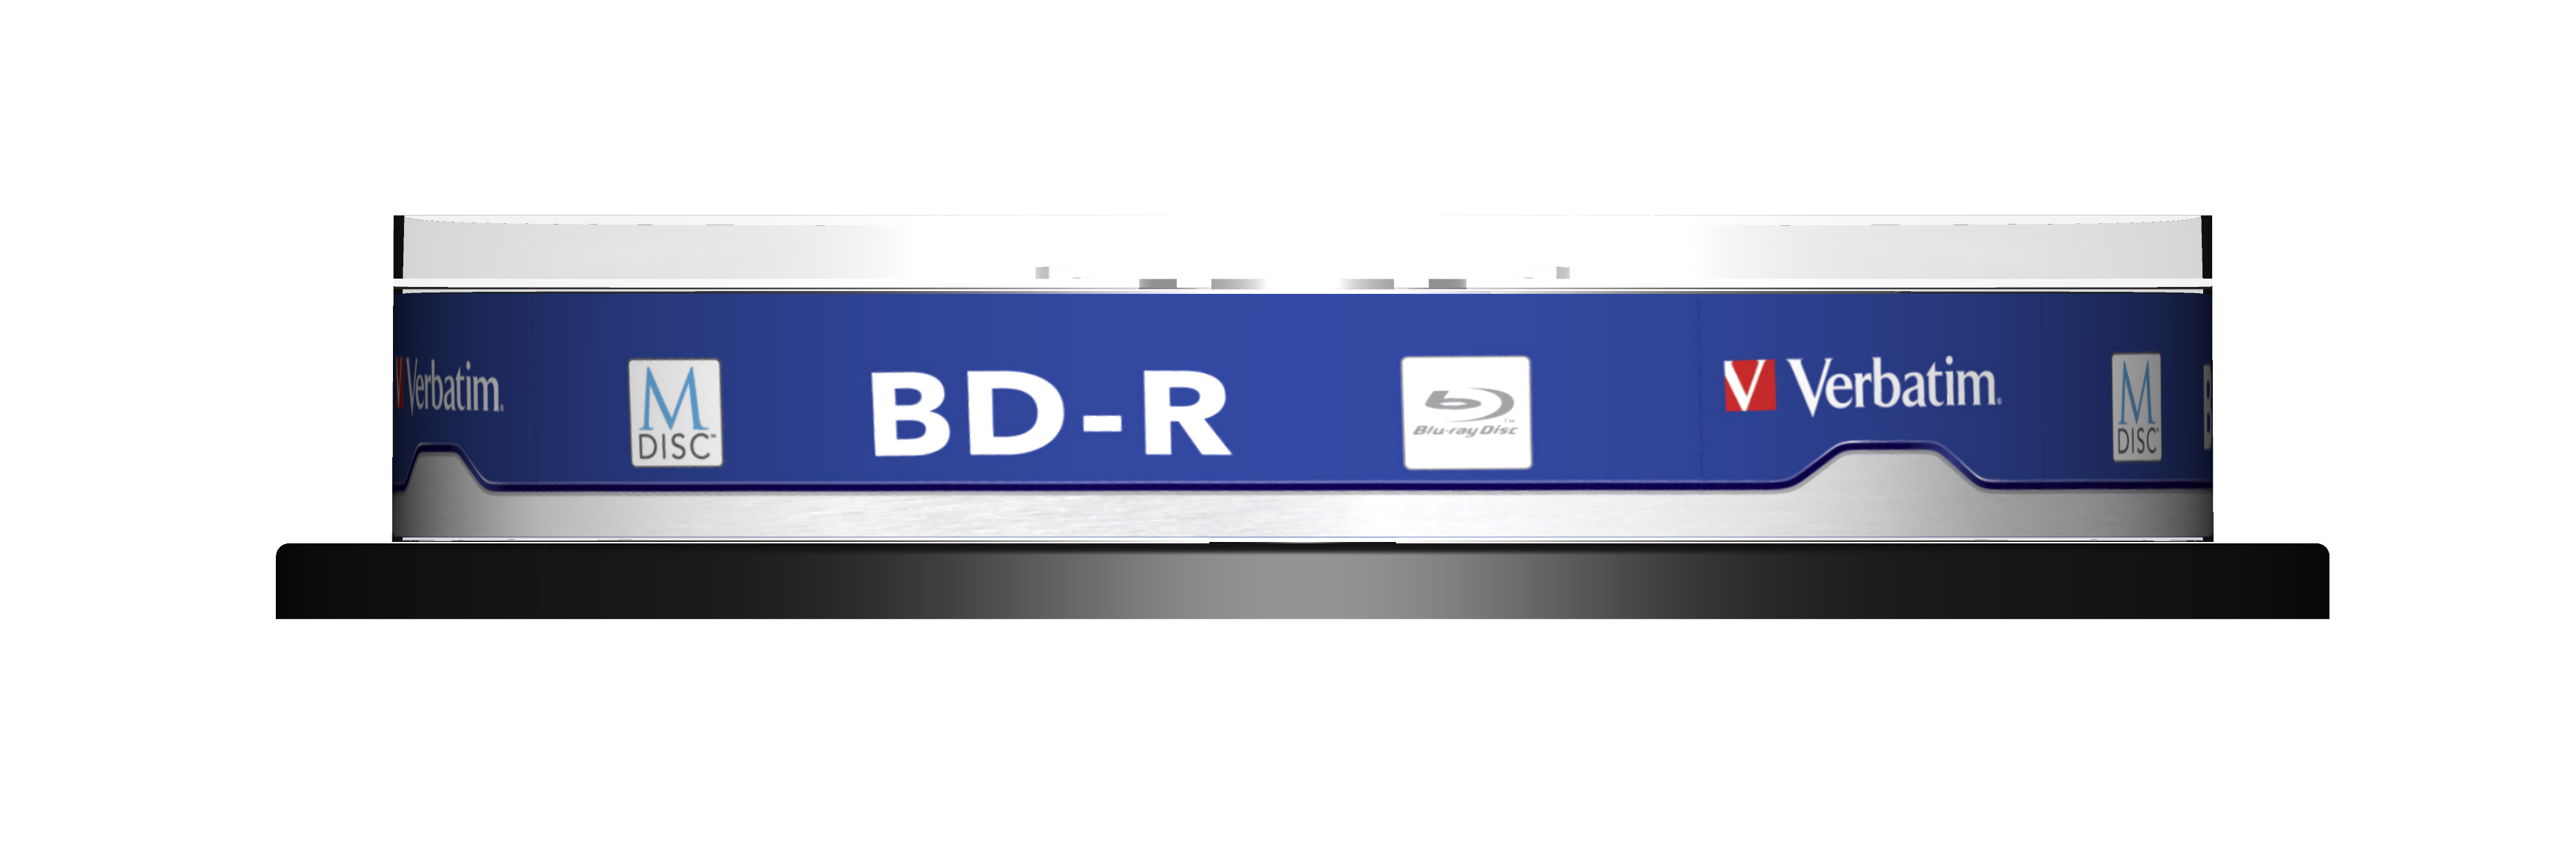 Verbatim M-Disc 4x BD-R 25 GB 10 stk